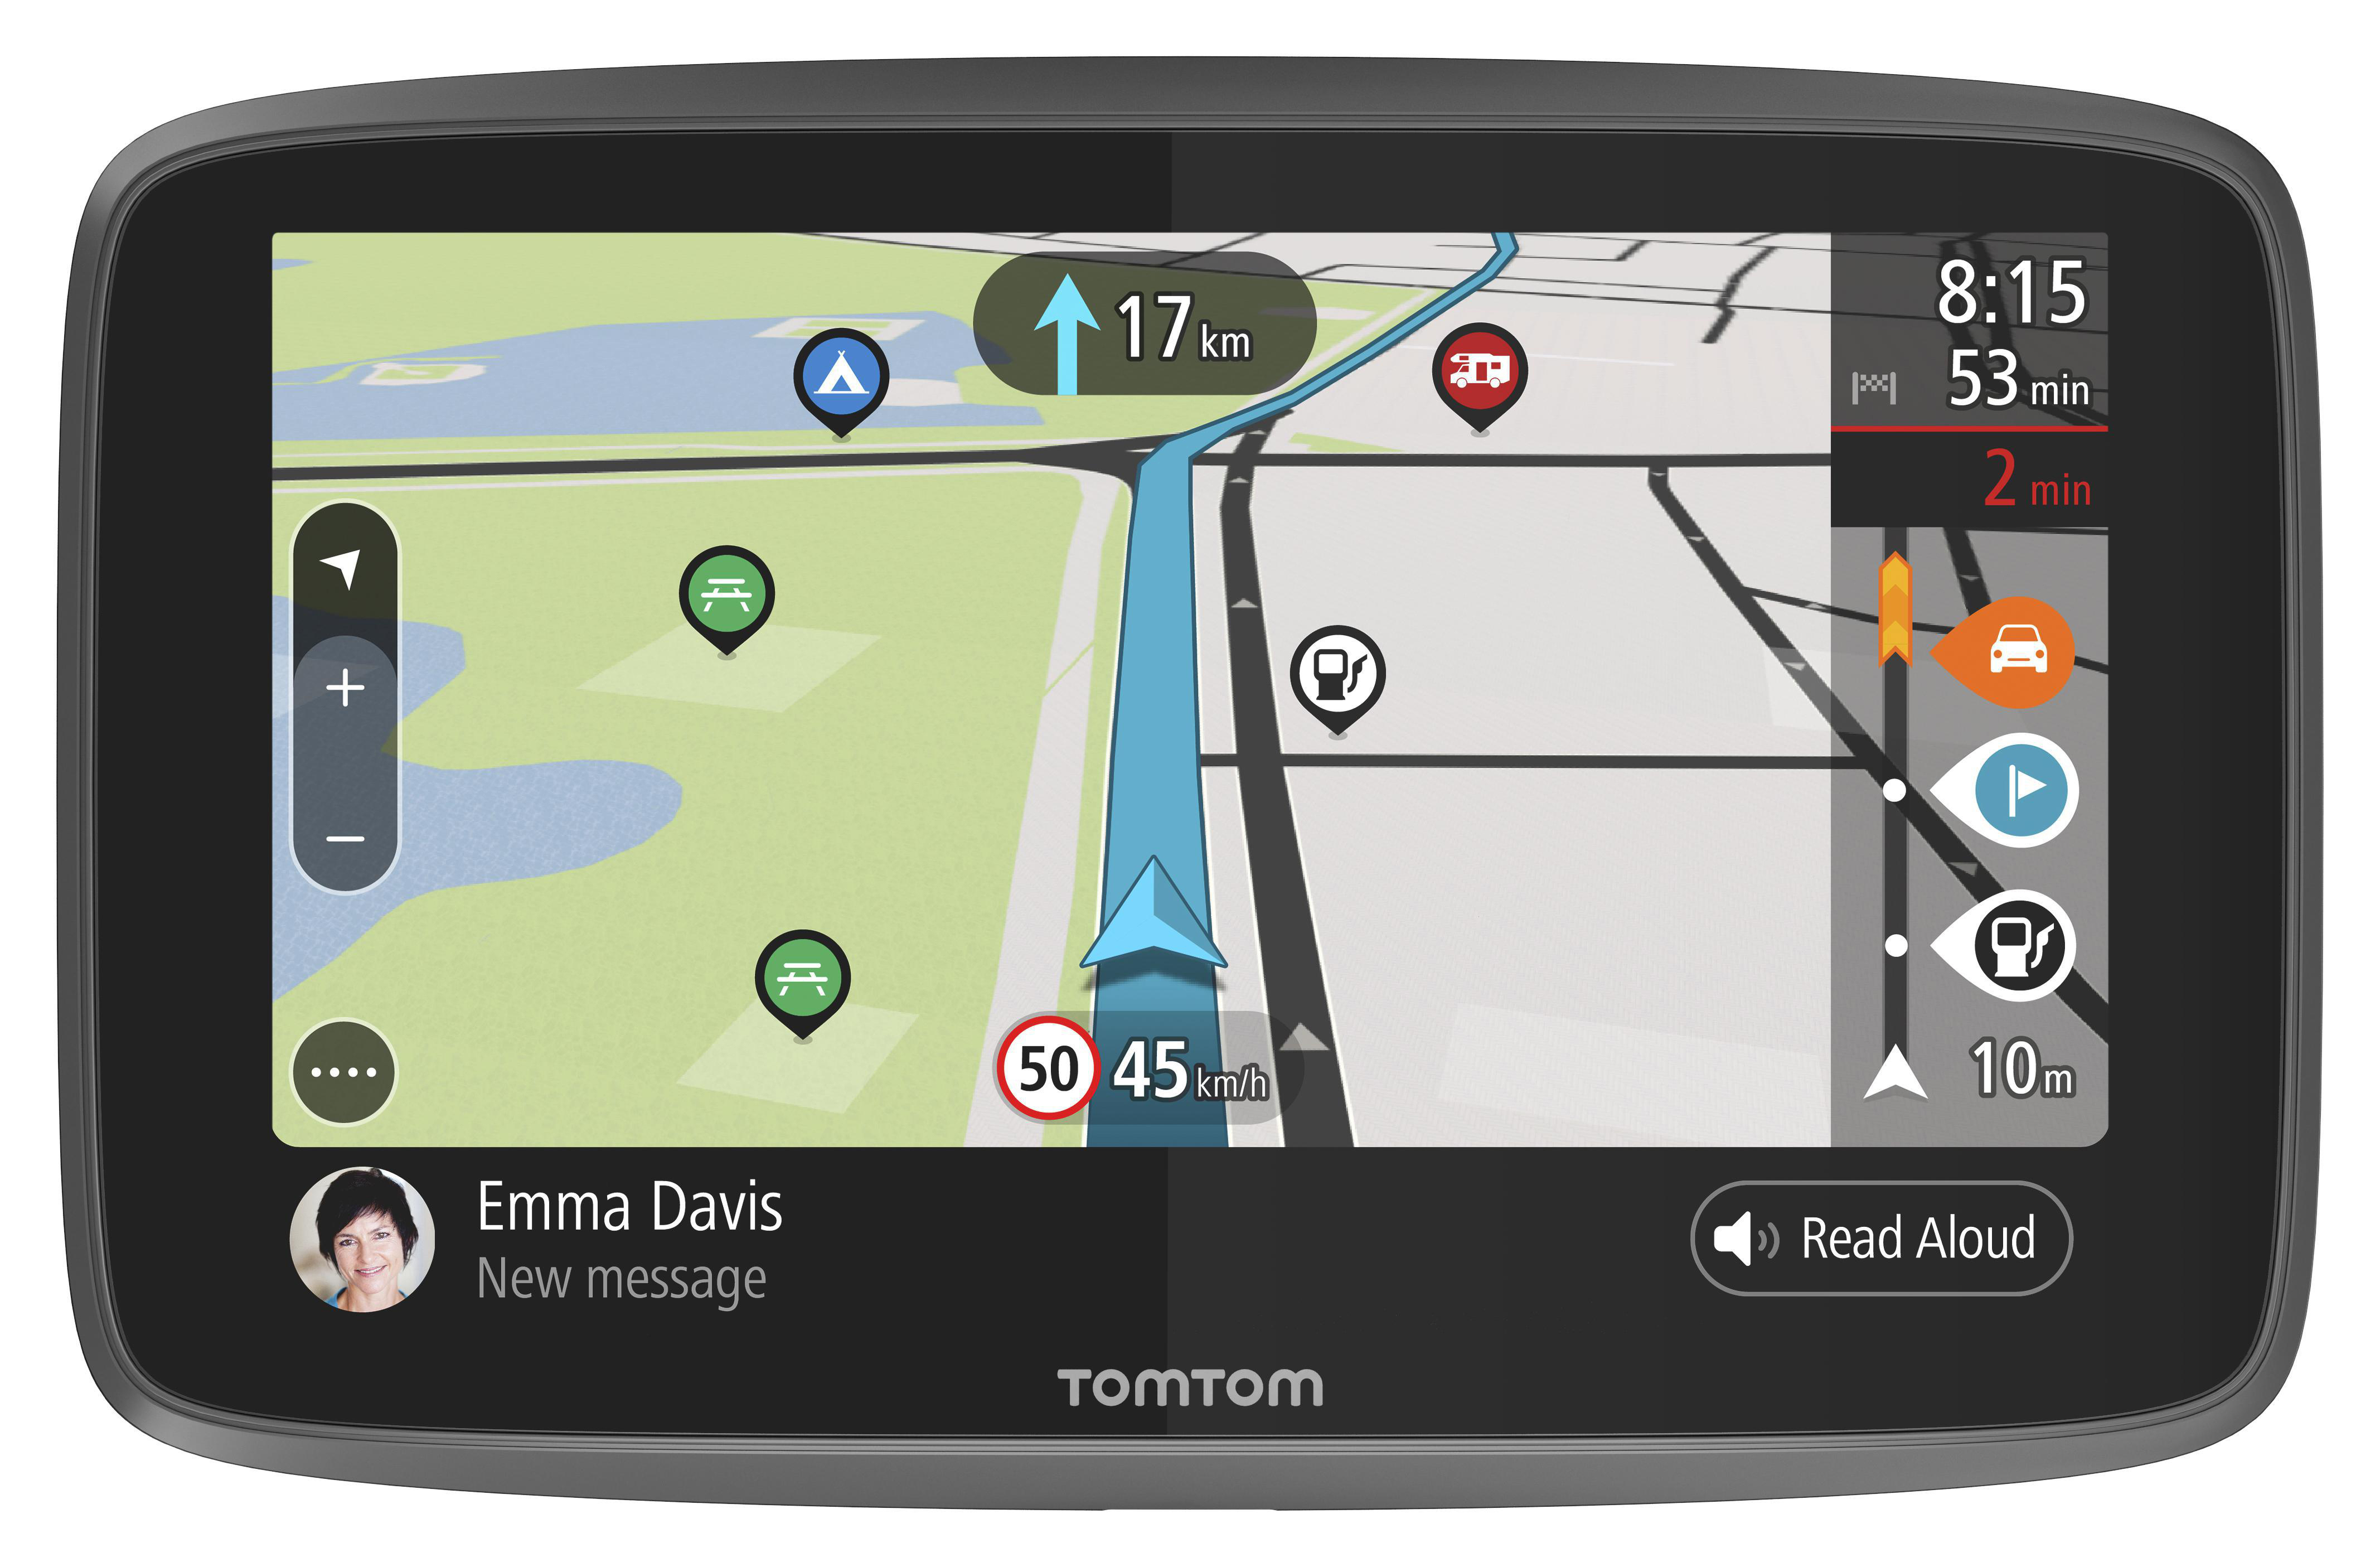 TomTom Camping Navigationsgerät GO über Wi-Fi, Zoll, TomTom Road Sonderziele Camper und Updates Wohnwagen, Wohnmobile (6 Welt, Karten-Updates für Trips)